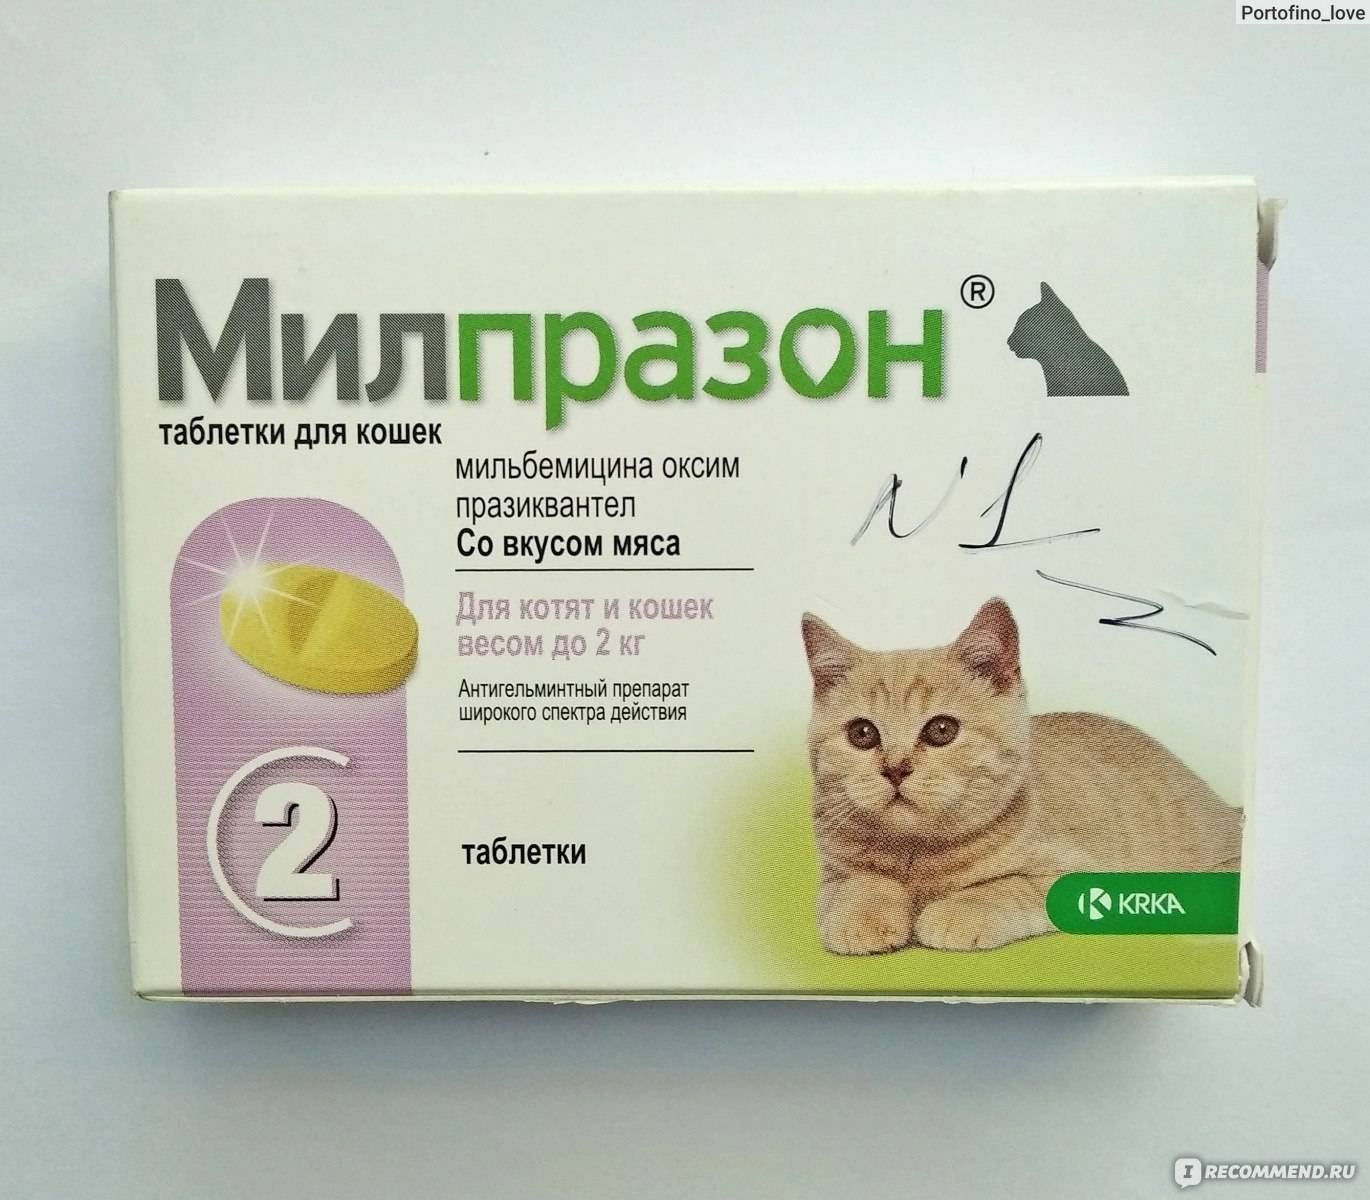 Глистогонные препараты для кошек